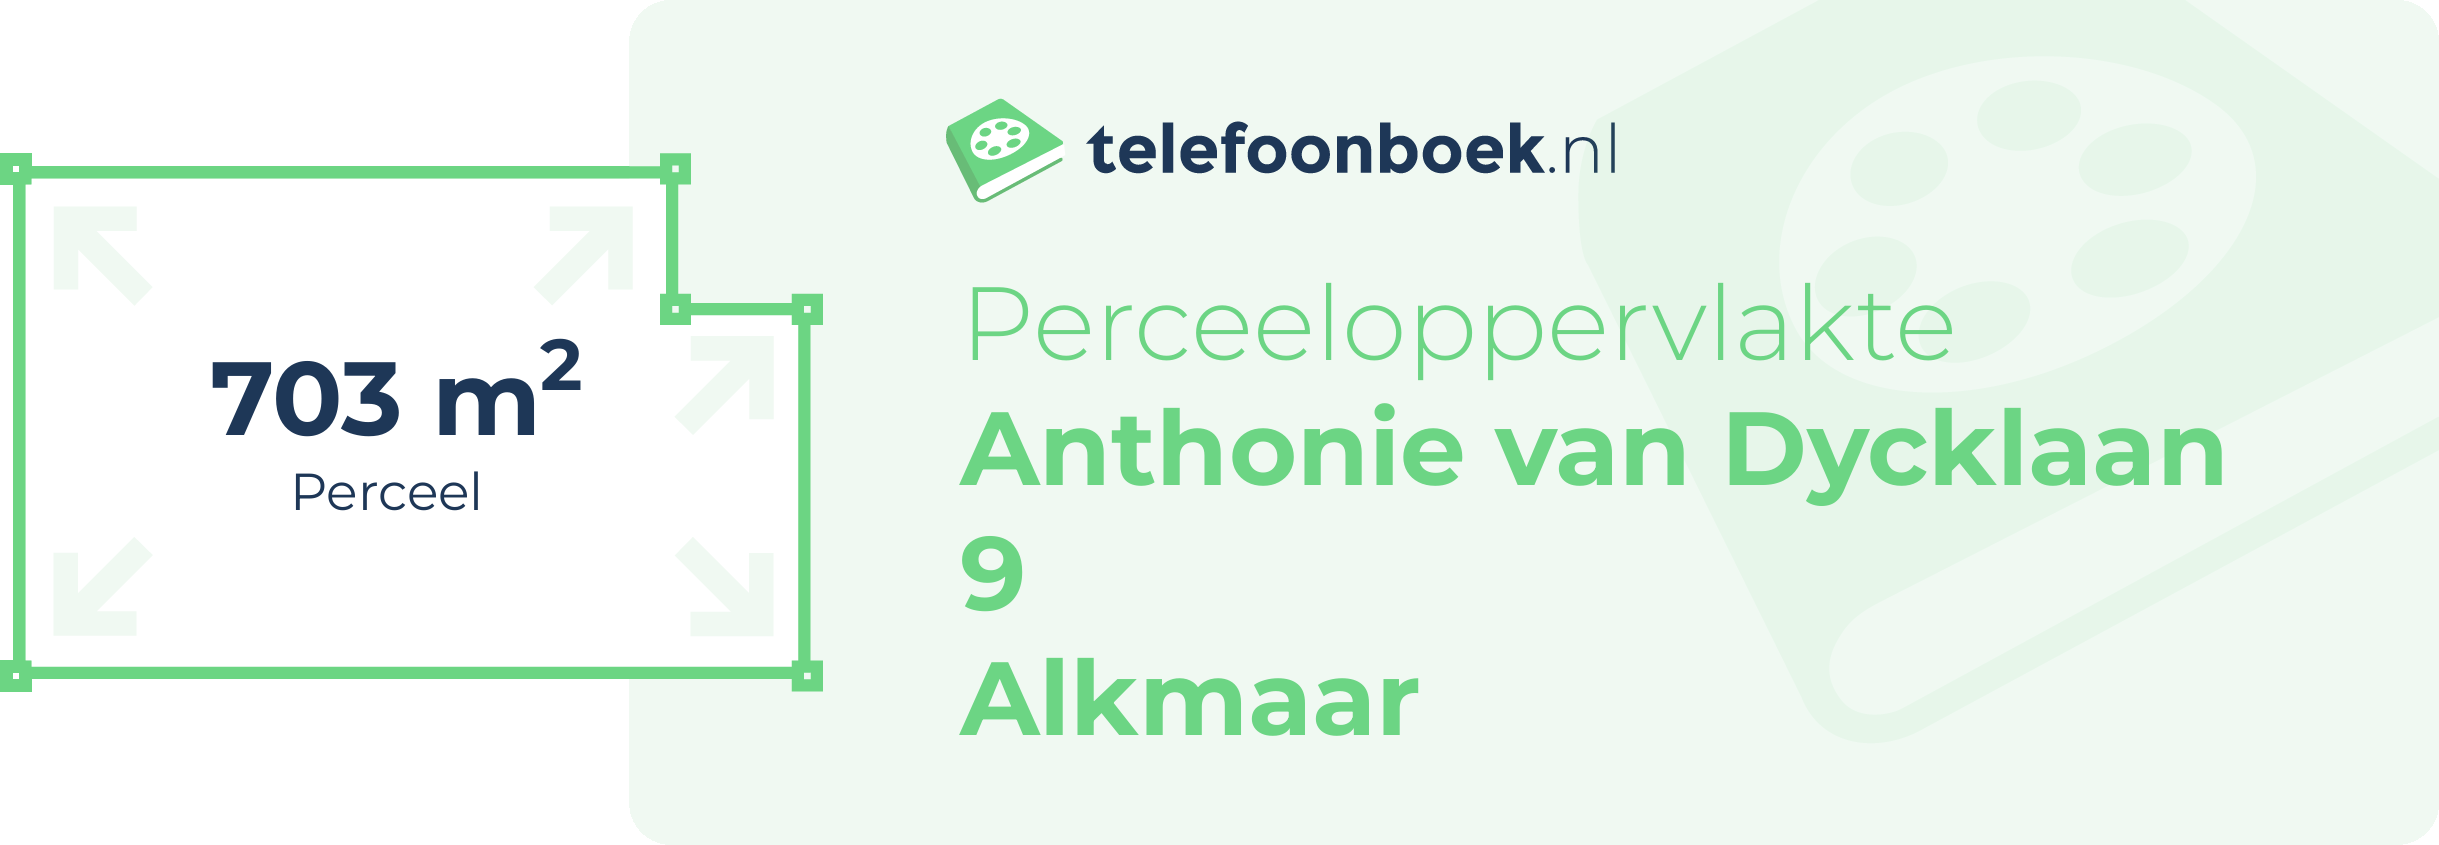 Perceeloppervlakte Anthonie Van Dycklaan 9 Alkmaar